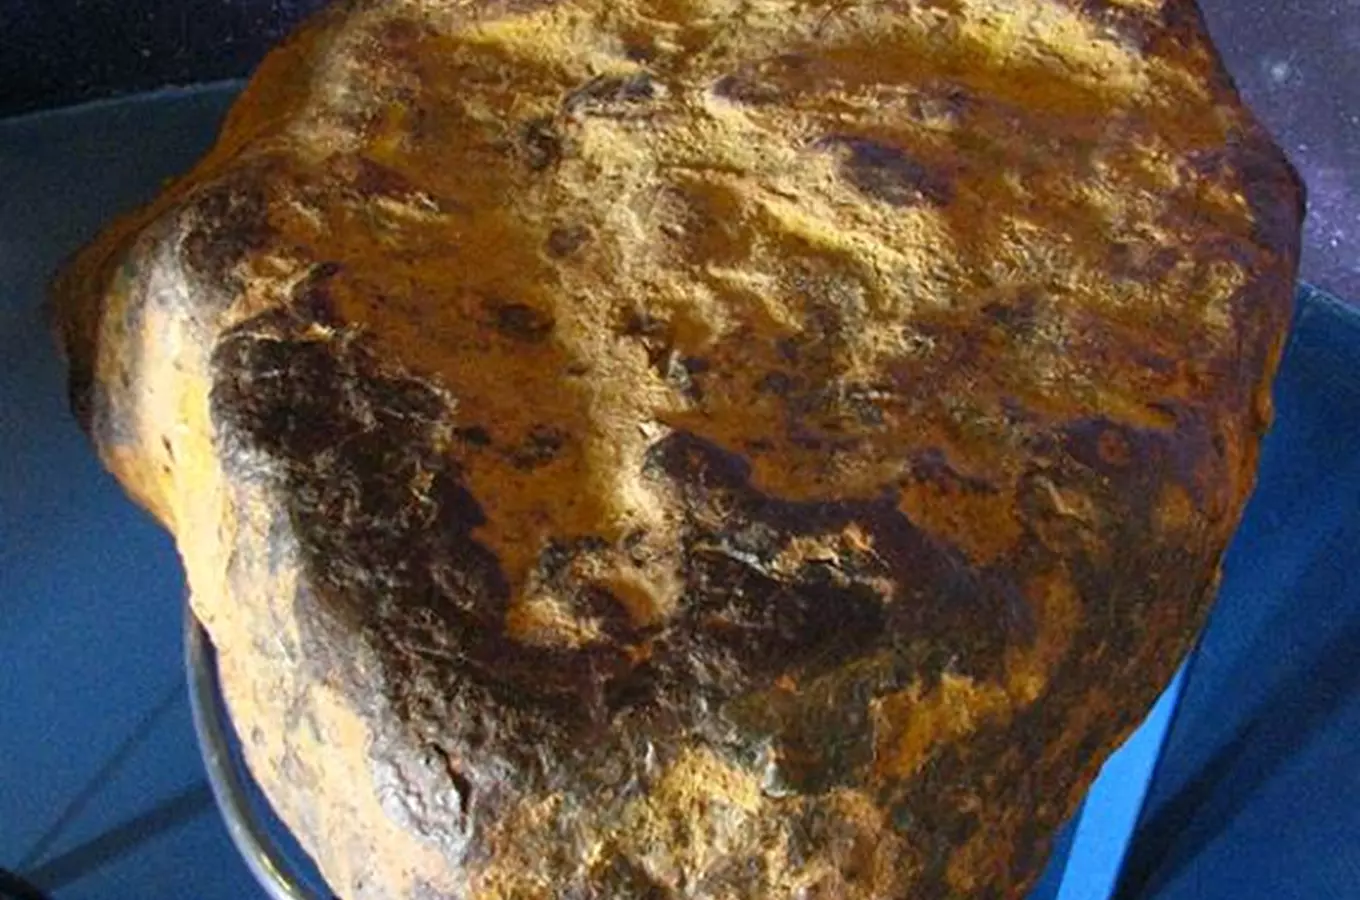 Muonionalusta – největší meteorit vystavený v České republice